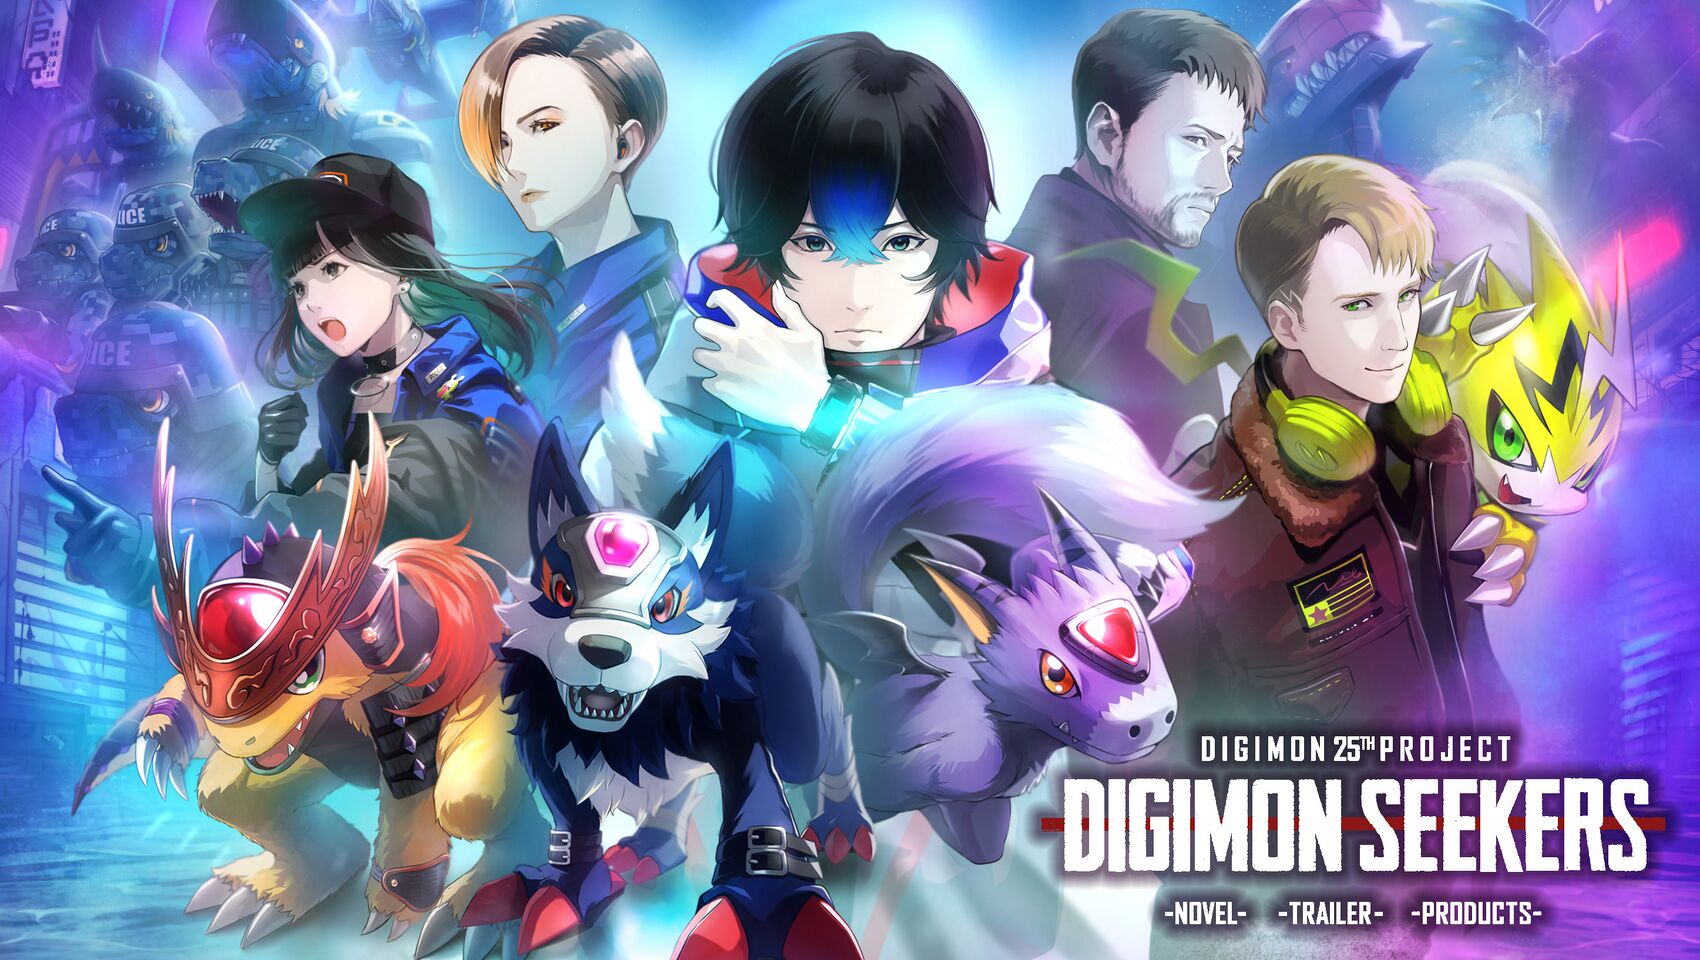 Digimonseekers visual2.jpg